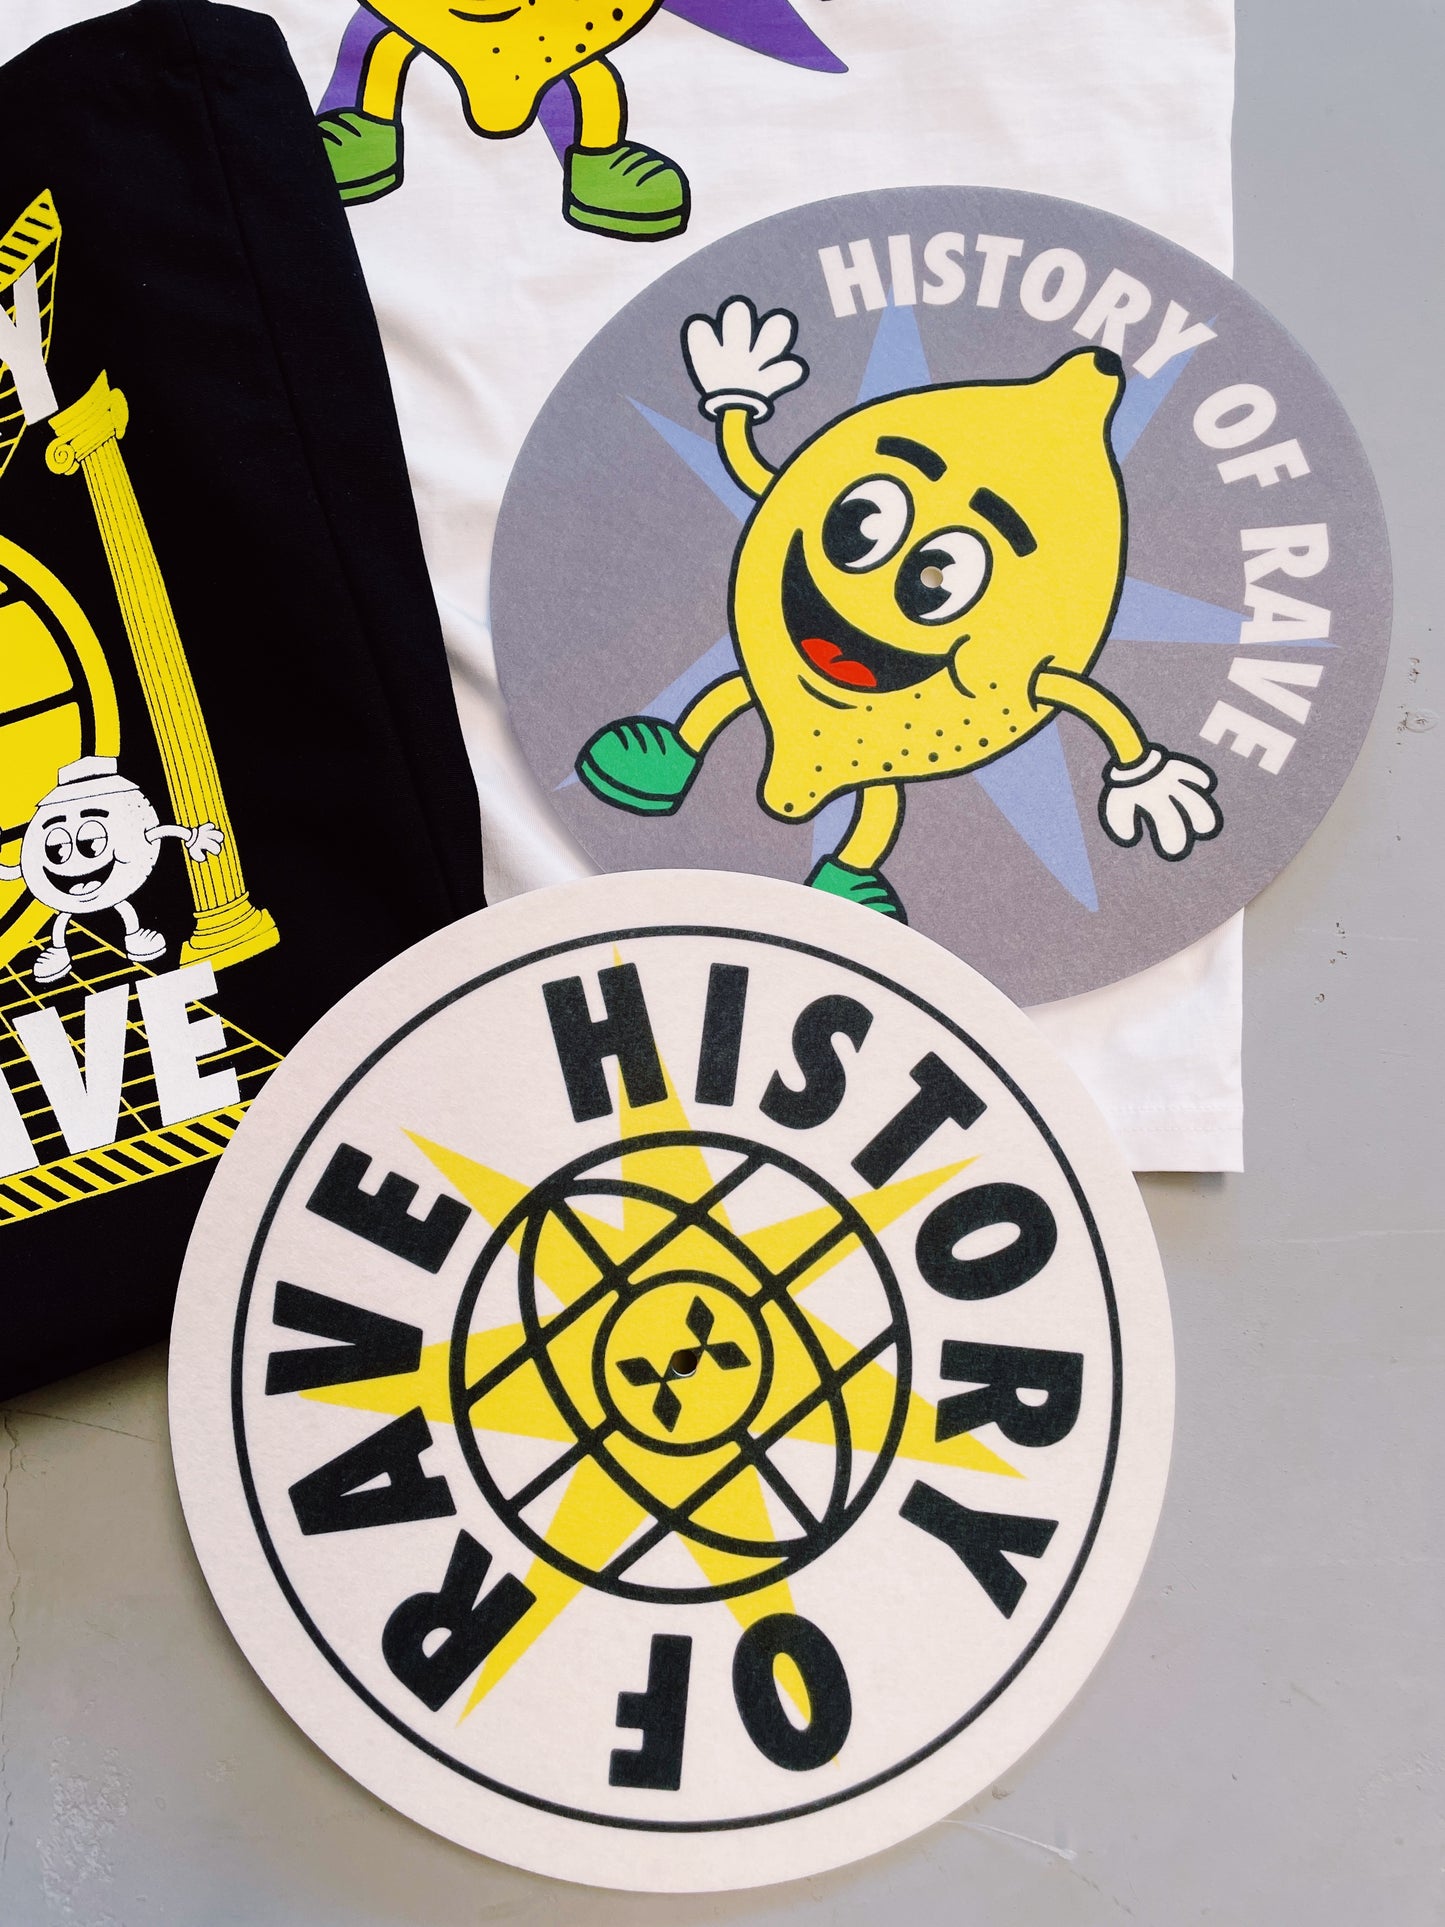 History Of Rave 'Logo' Vinyl Slipmat